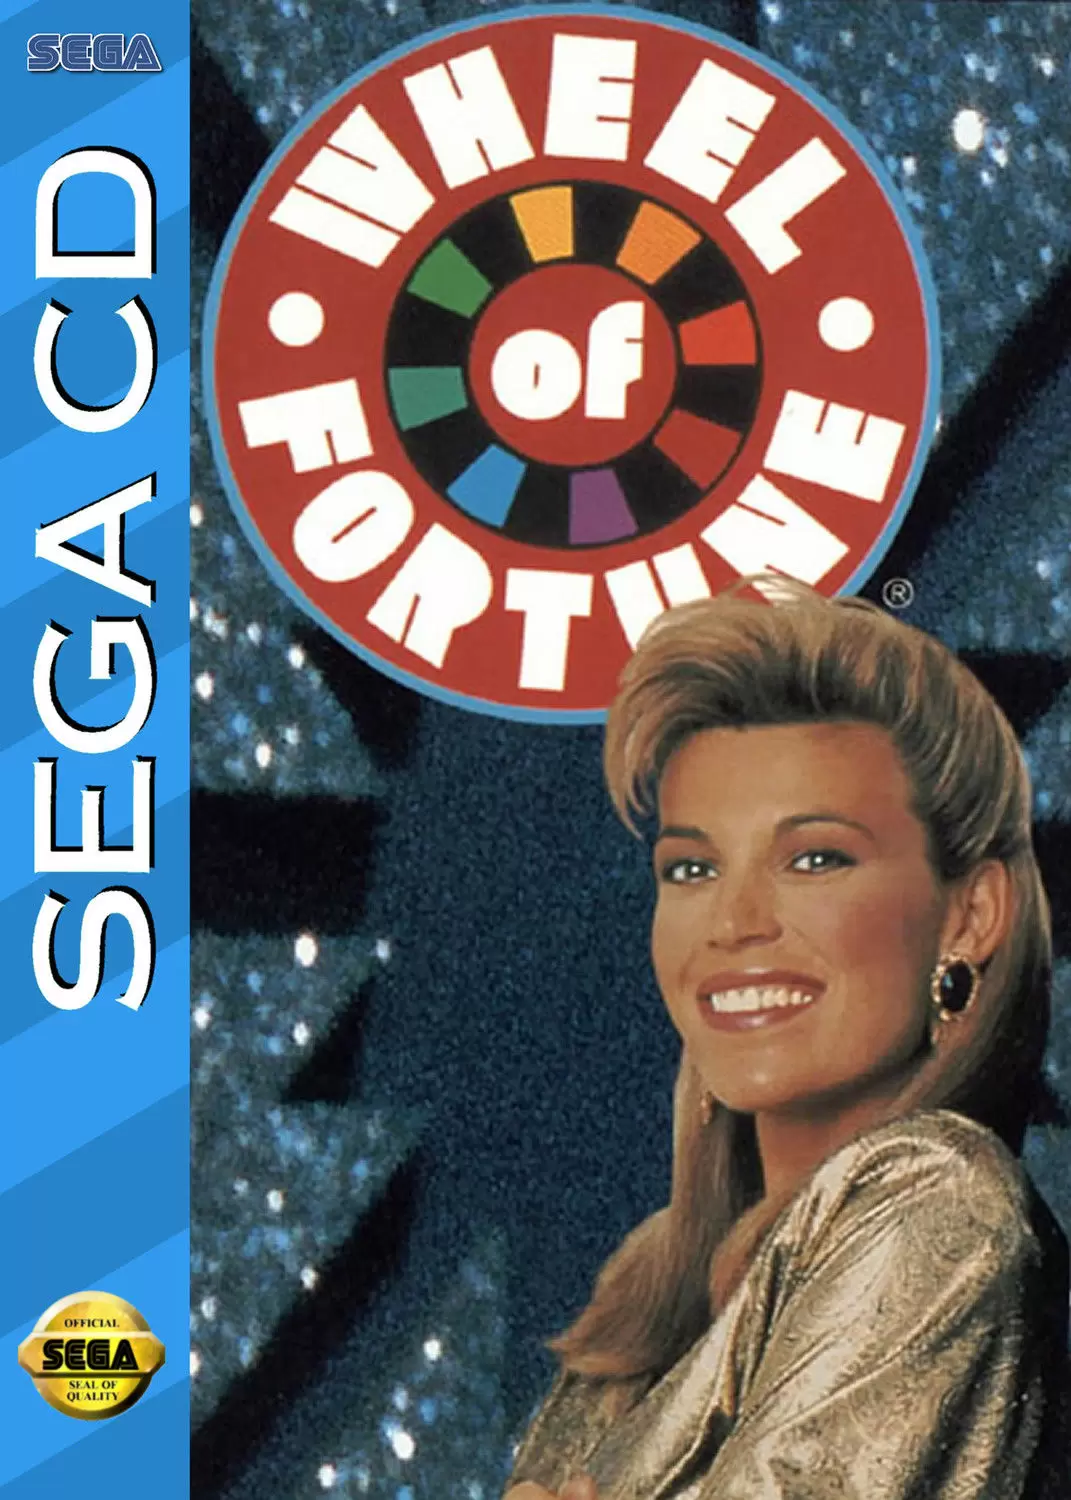 SEGA Mega CD Games - Wheel of Fortune